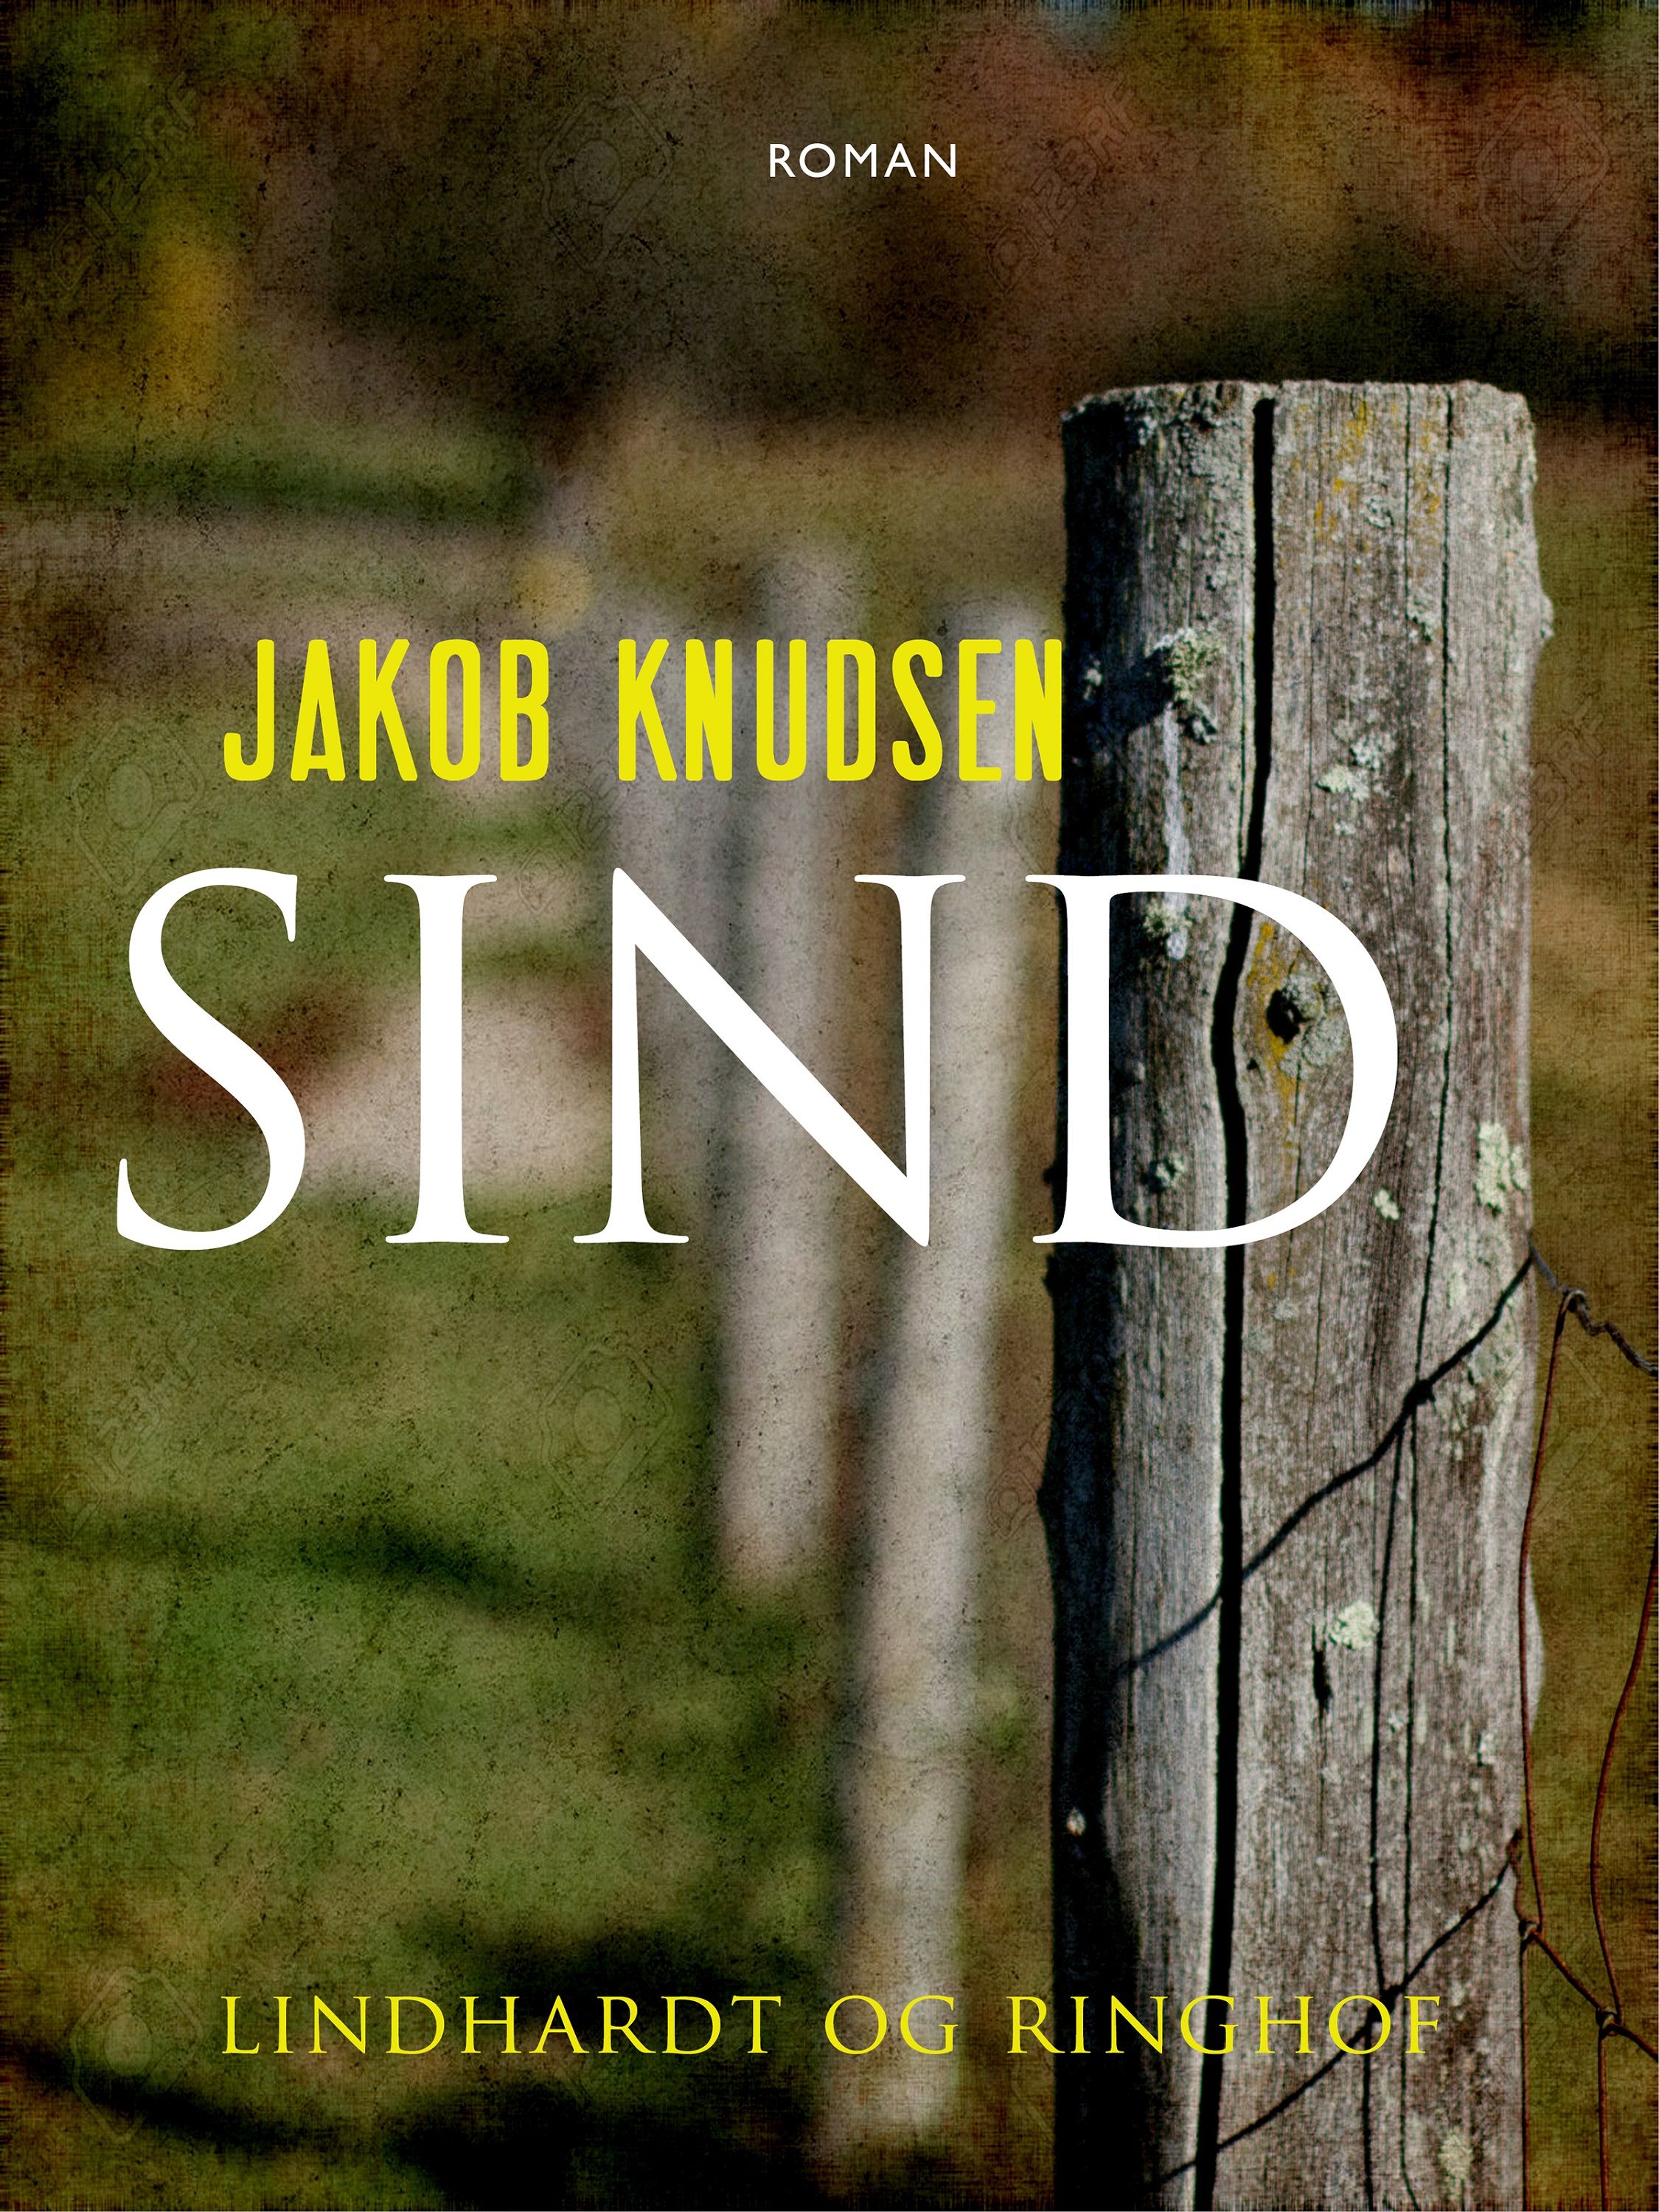 Sind, ljudbok av Jakob Knudsen